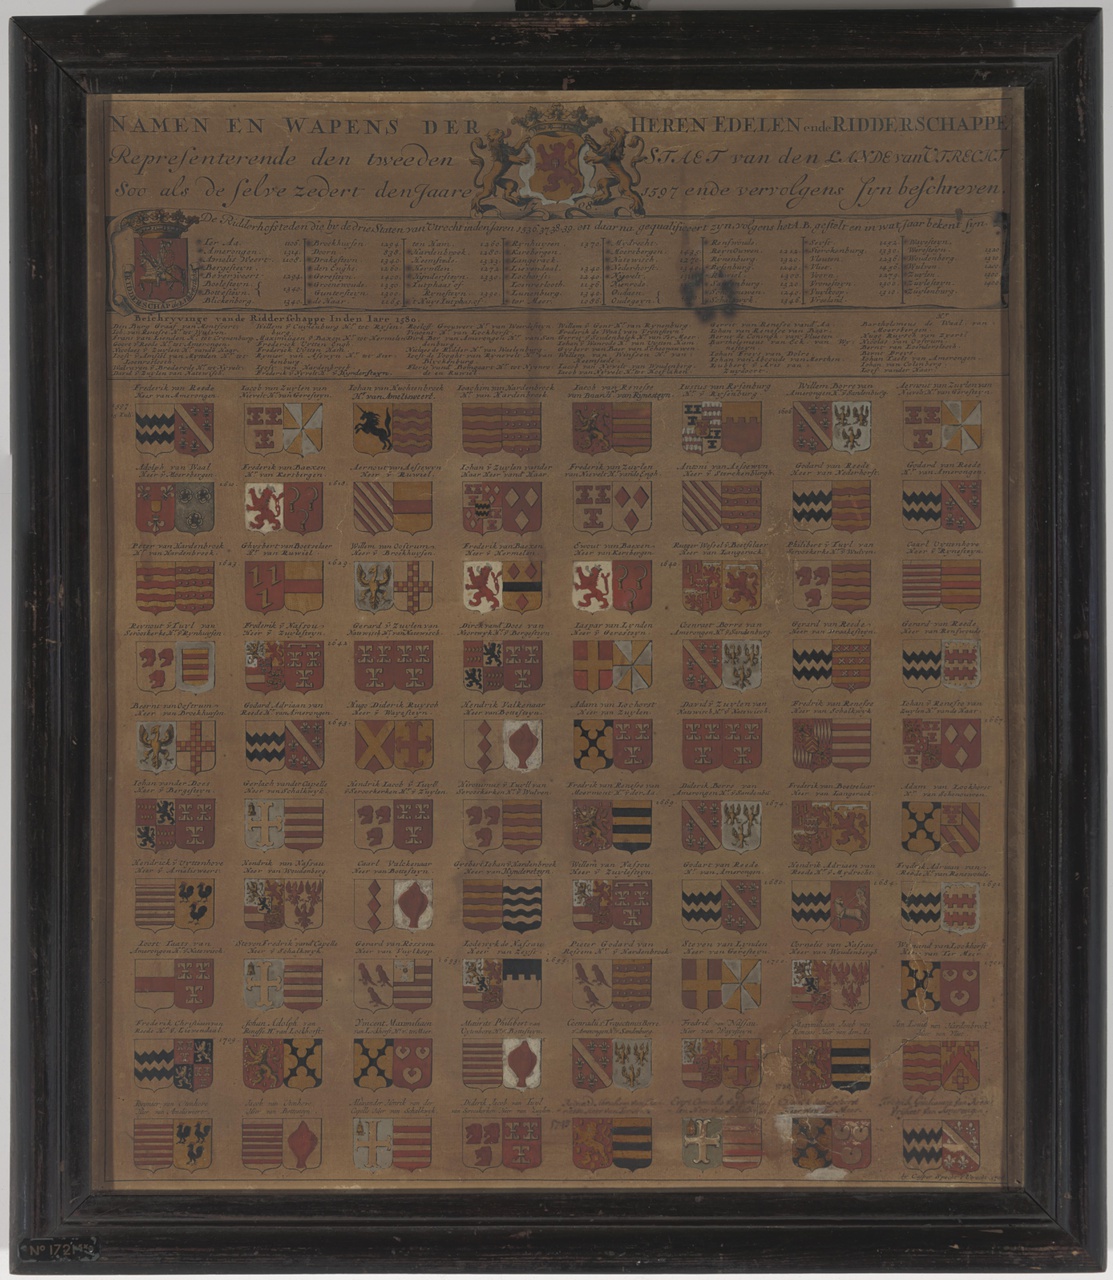 Wapenkaart met namen en wapens van de presidenten en ordinaris raden van het Hof van Utrecht 1530-1776